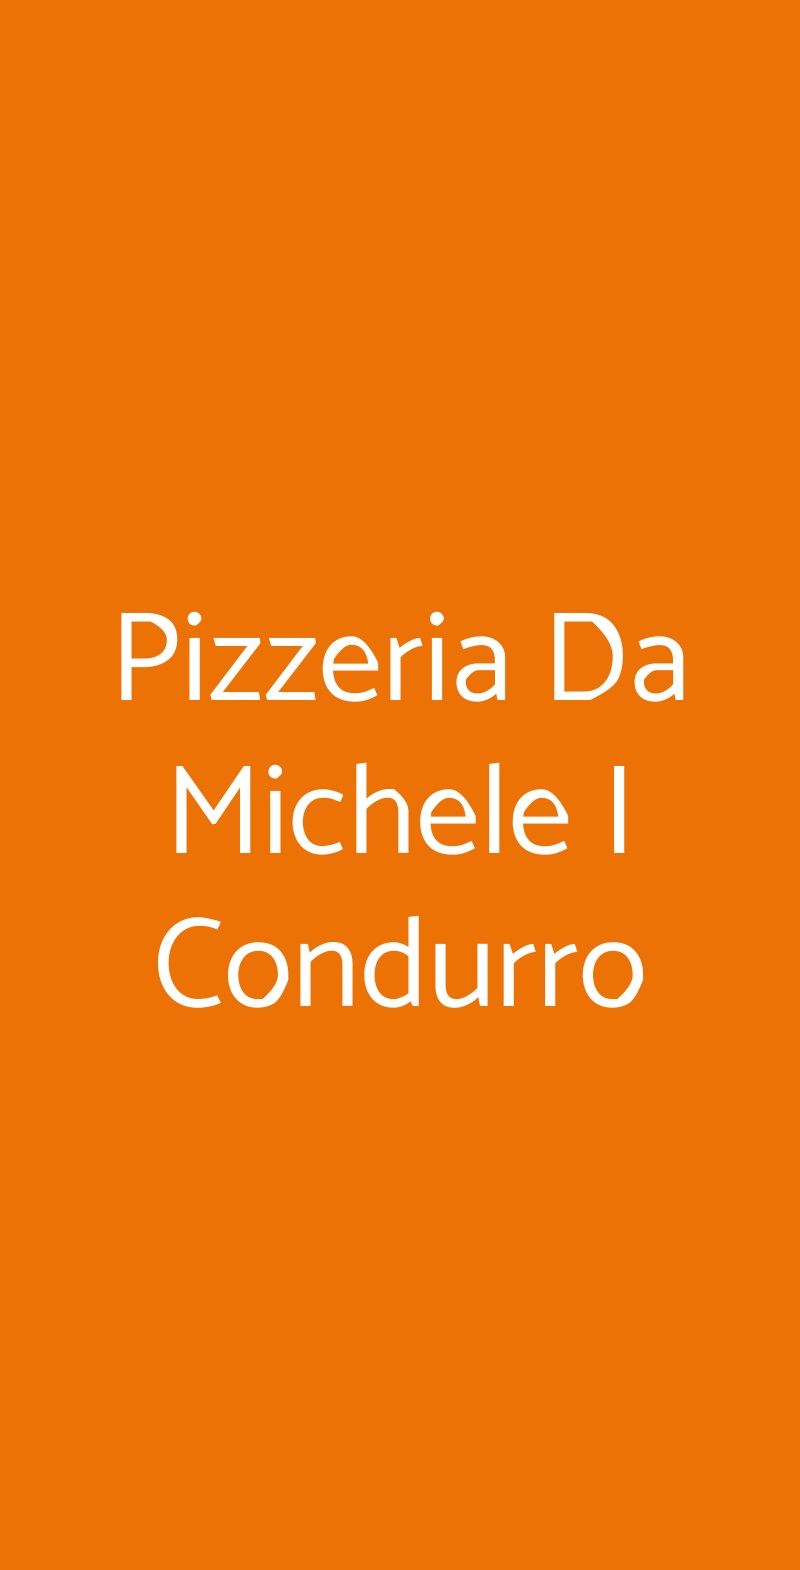 Pizzeria Da Michele I Condurro Milano menù 1 pagina